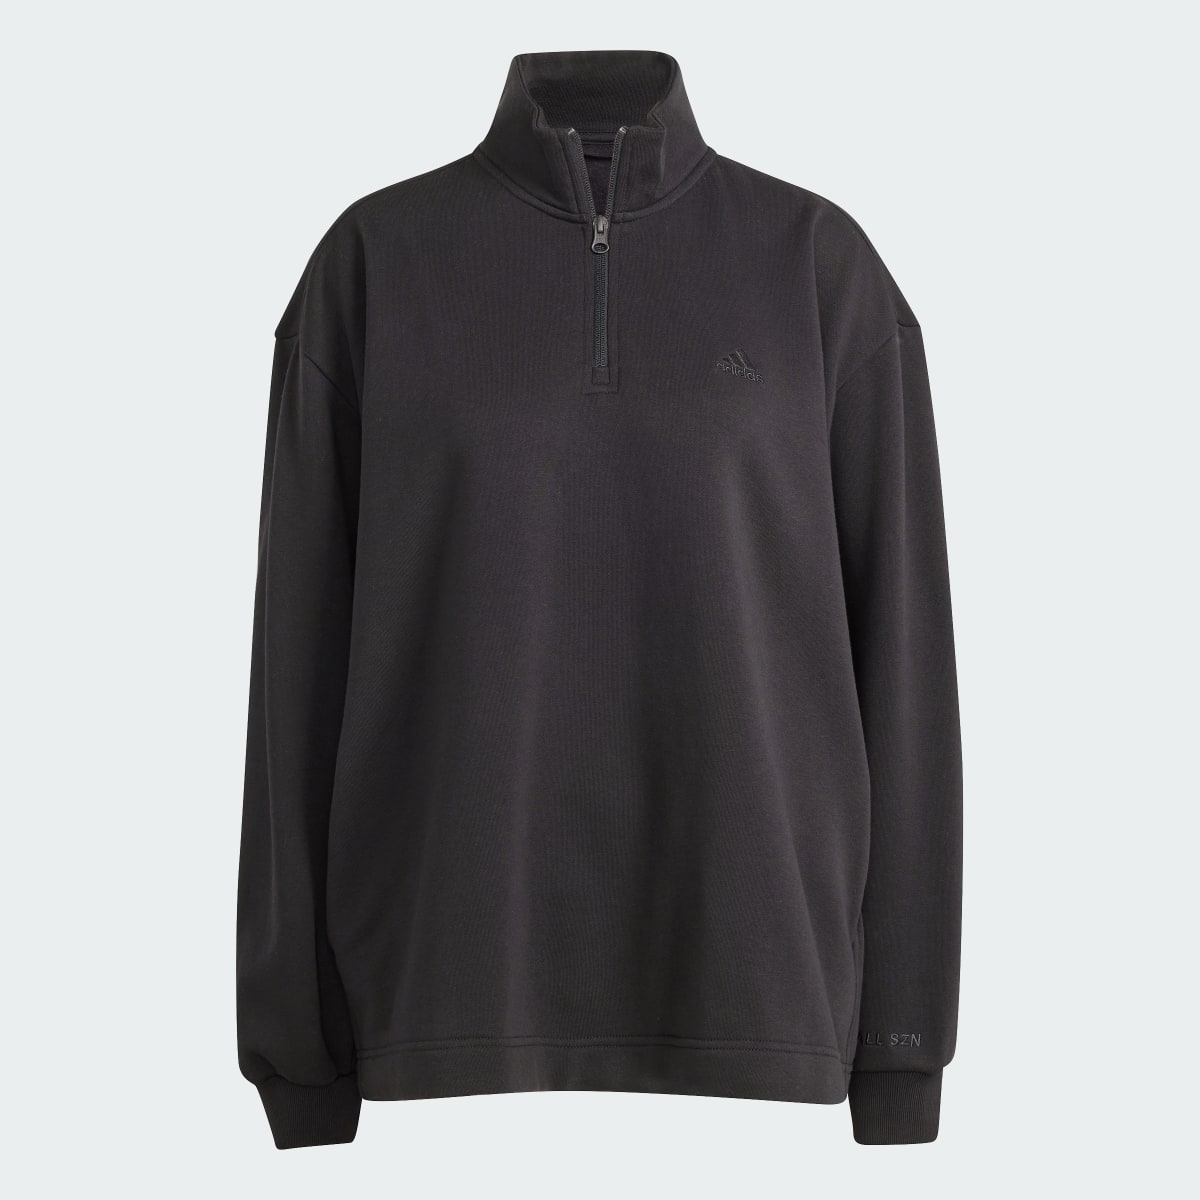 Adidas ALL SZN Fleece Quarter-Zip Sweatshirt. 5